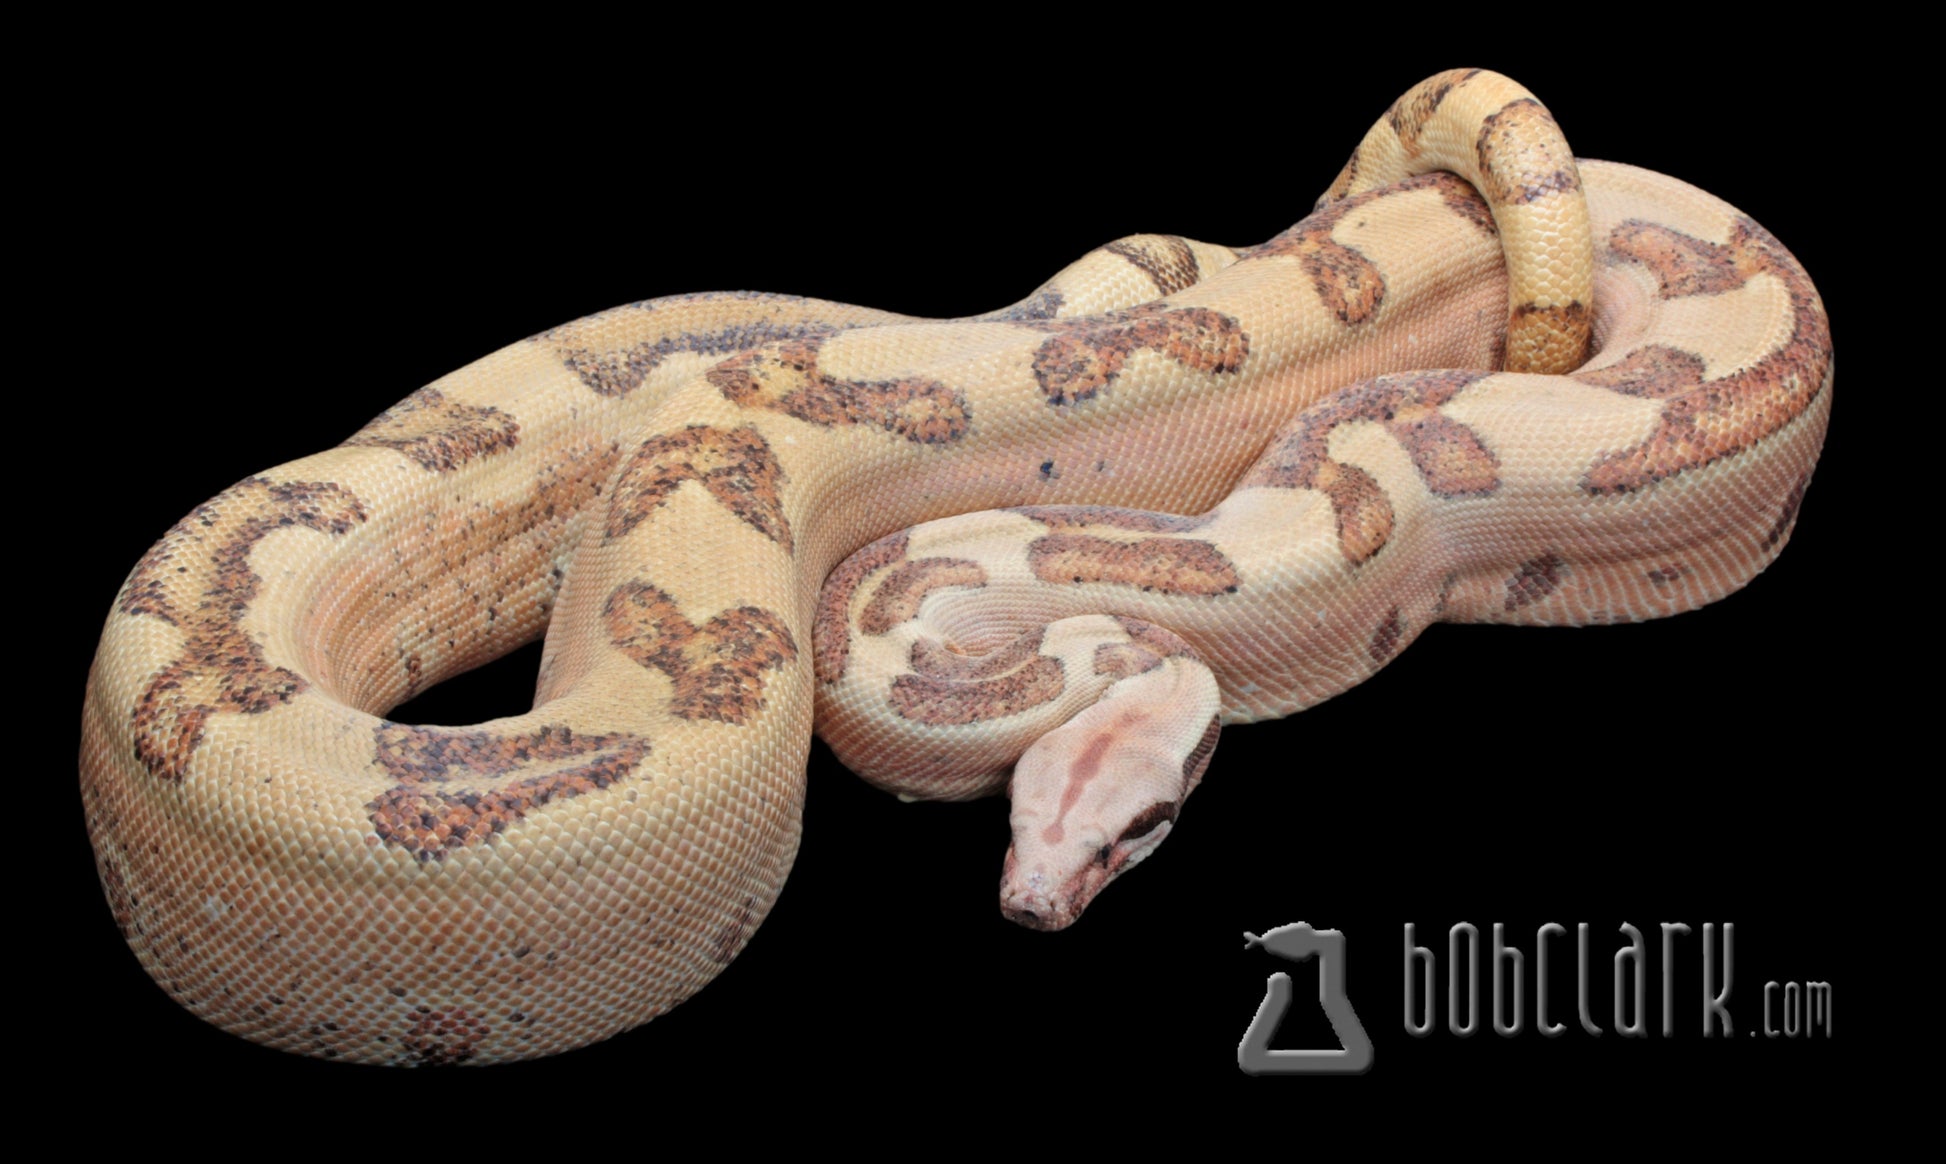 Boa Constrictors : Labyrinth hypo boa, 2020 proven breeding male 72 inches